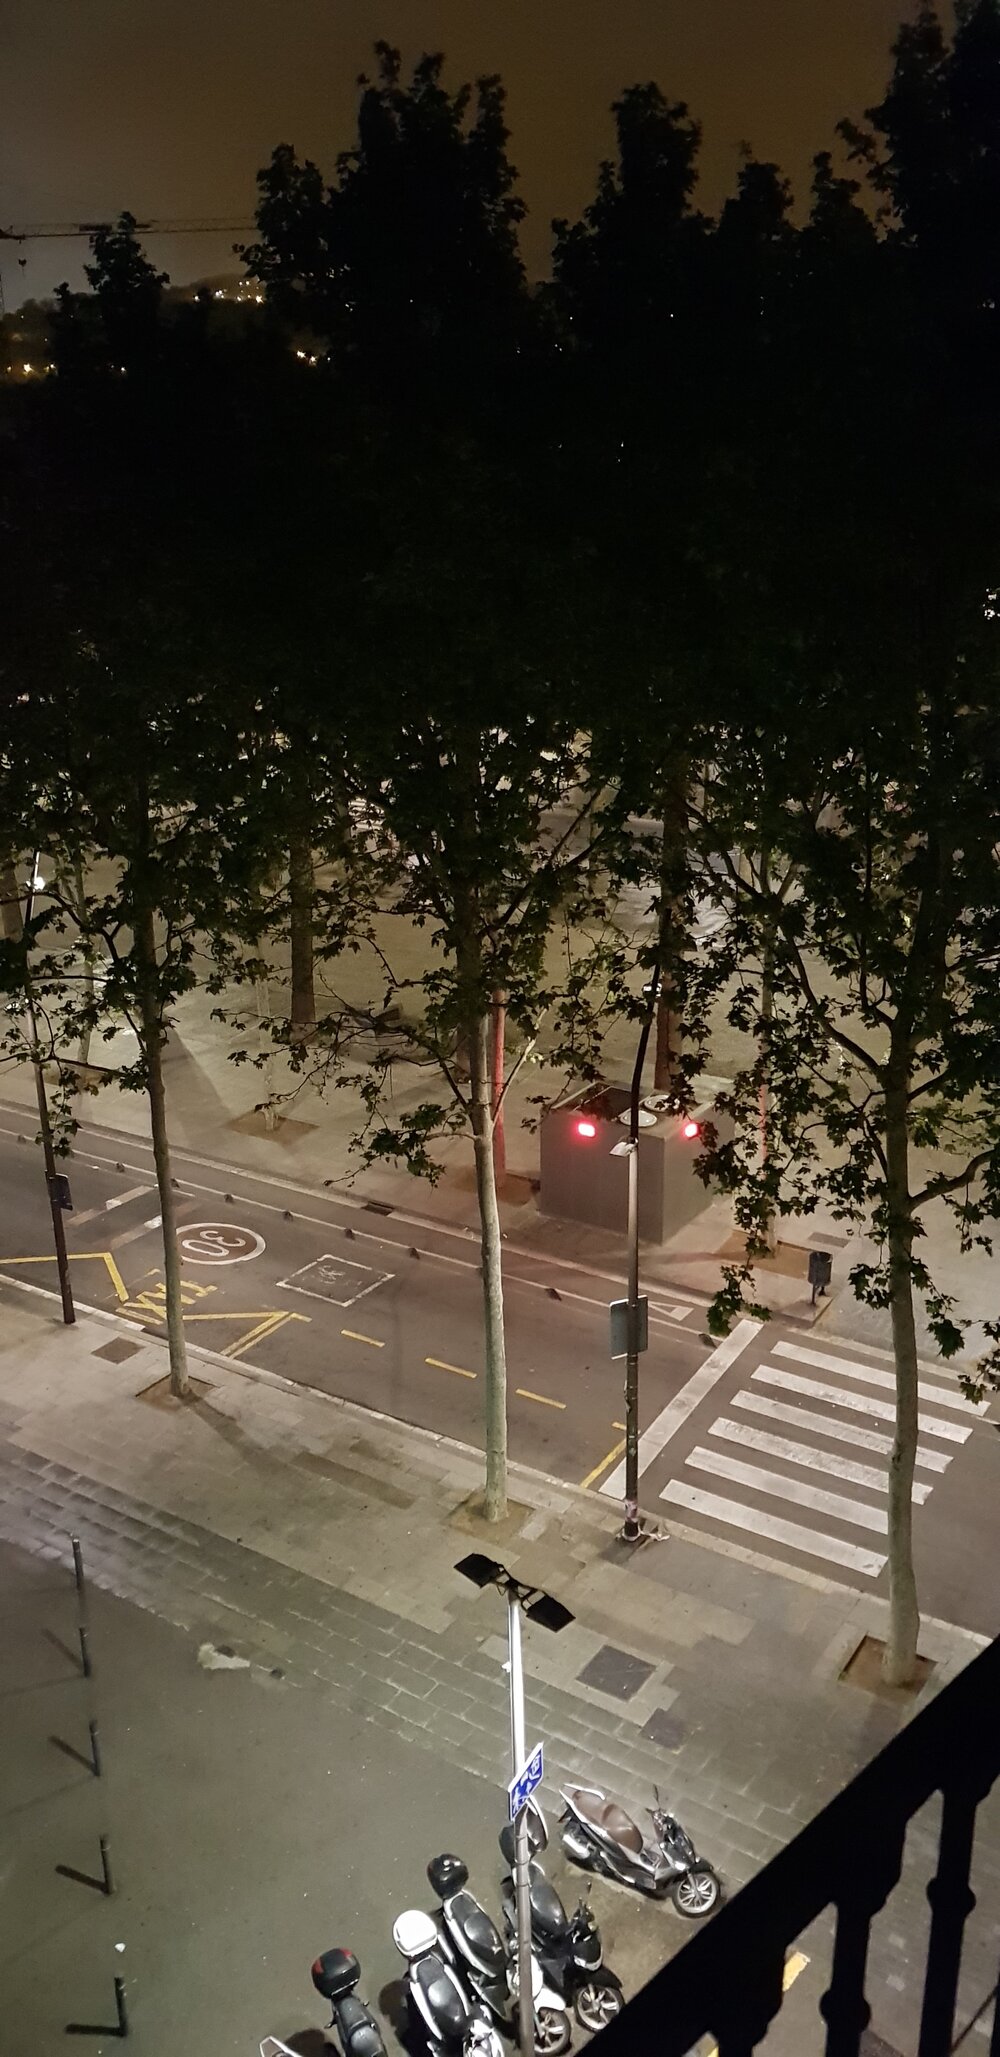  Figura 7. Rambla Raval, por la noche. Barcelona, 2020. Fotografía de Alex Giménez. Usado con permiso.  